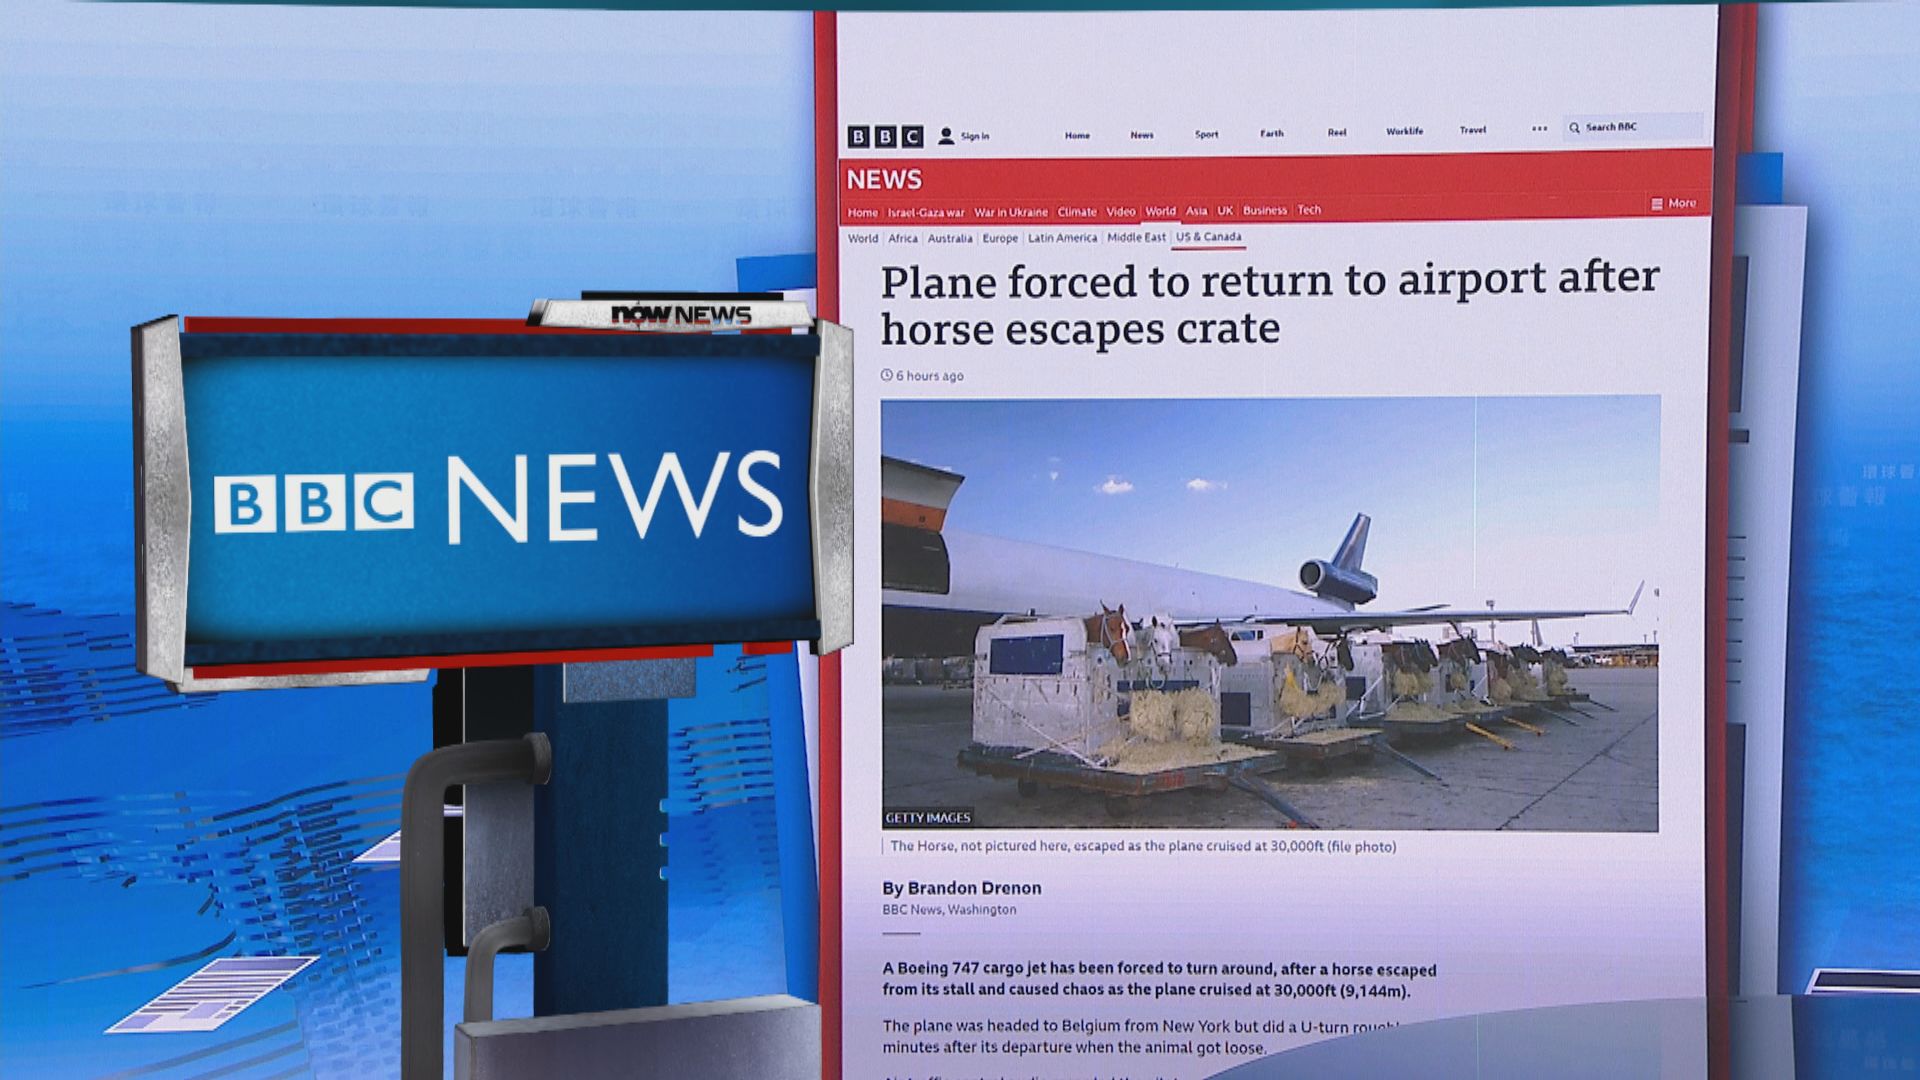 【環球薈報】機上馬匹逃出貨箱 貨機須折返紐約機場